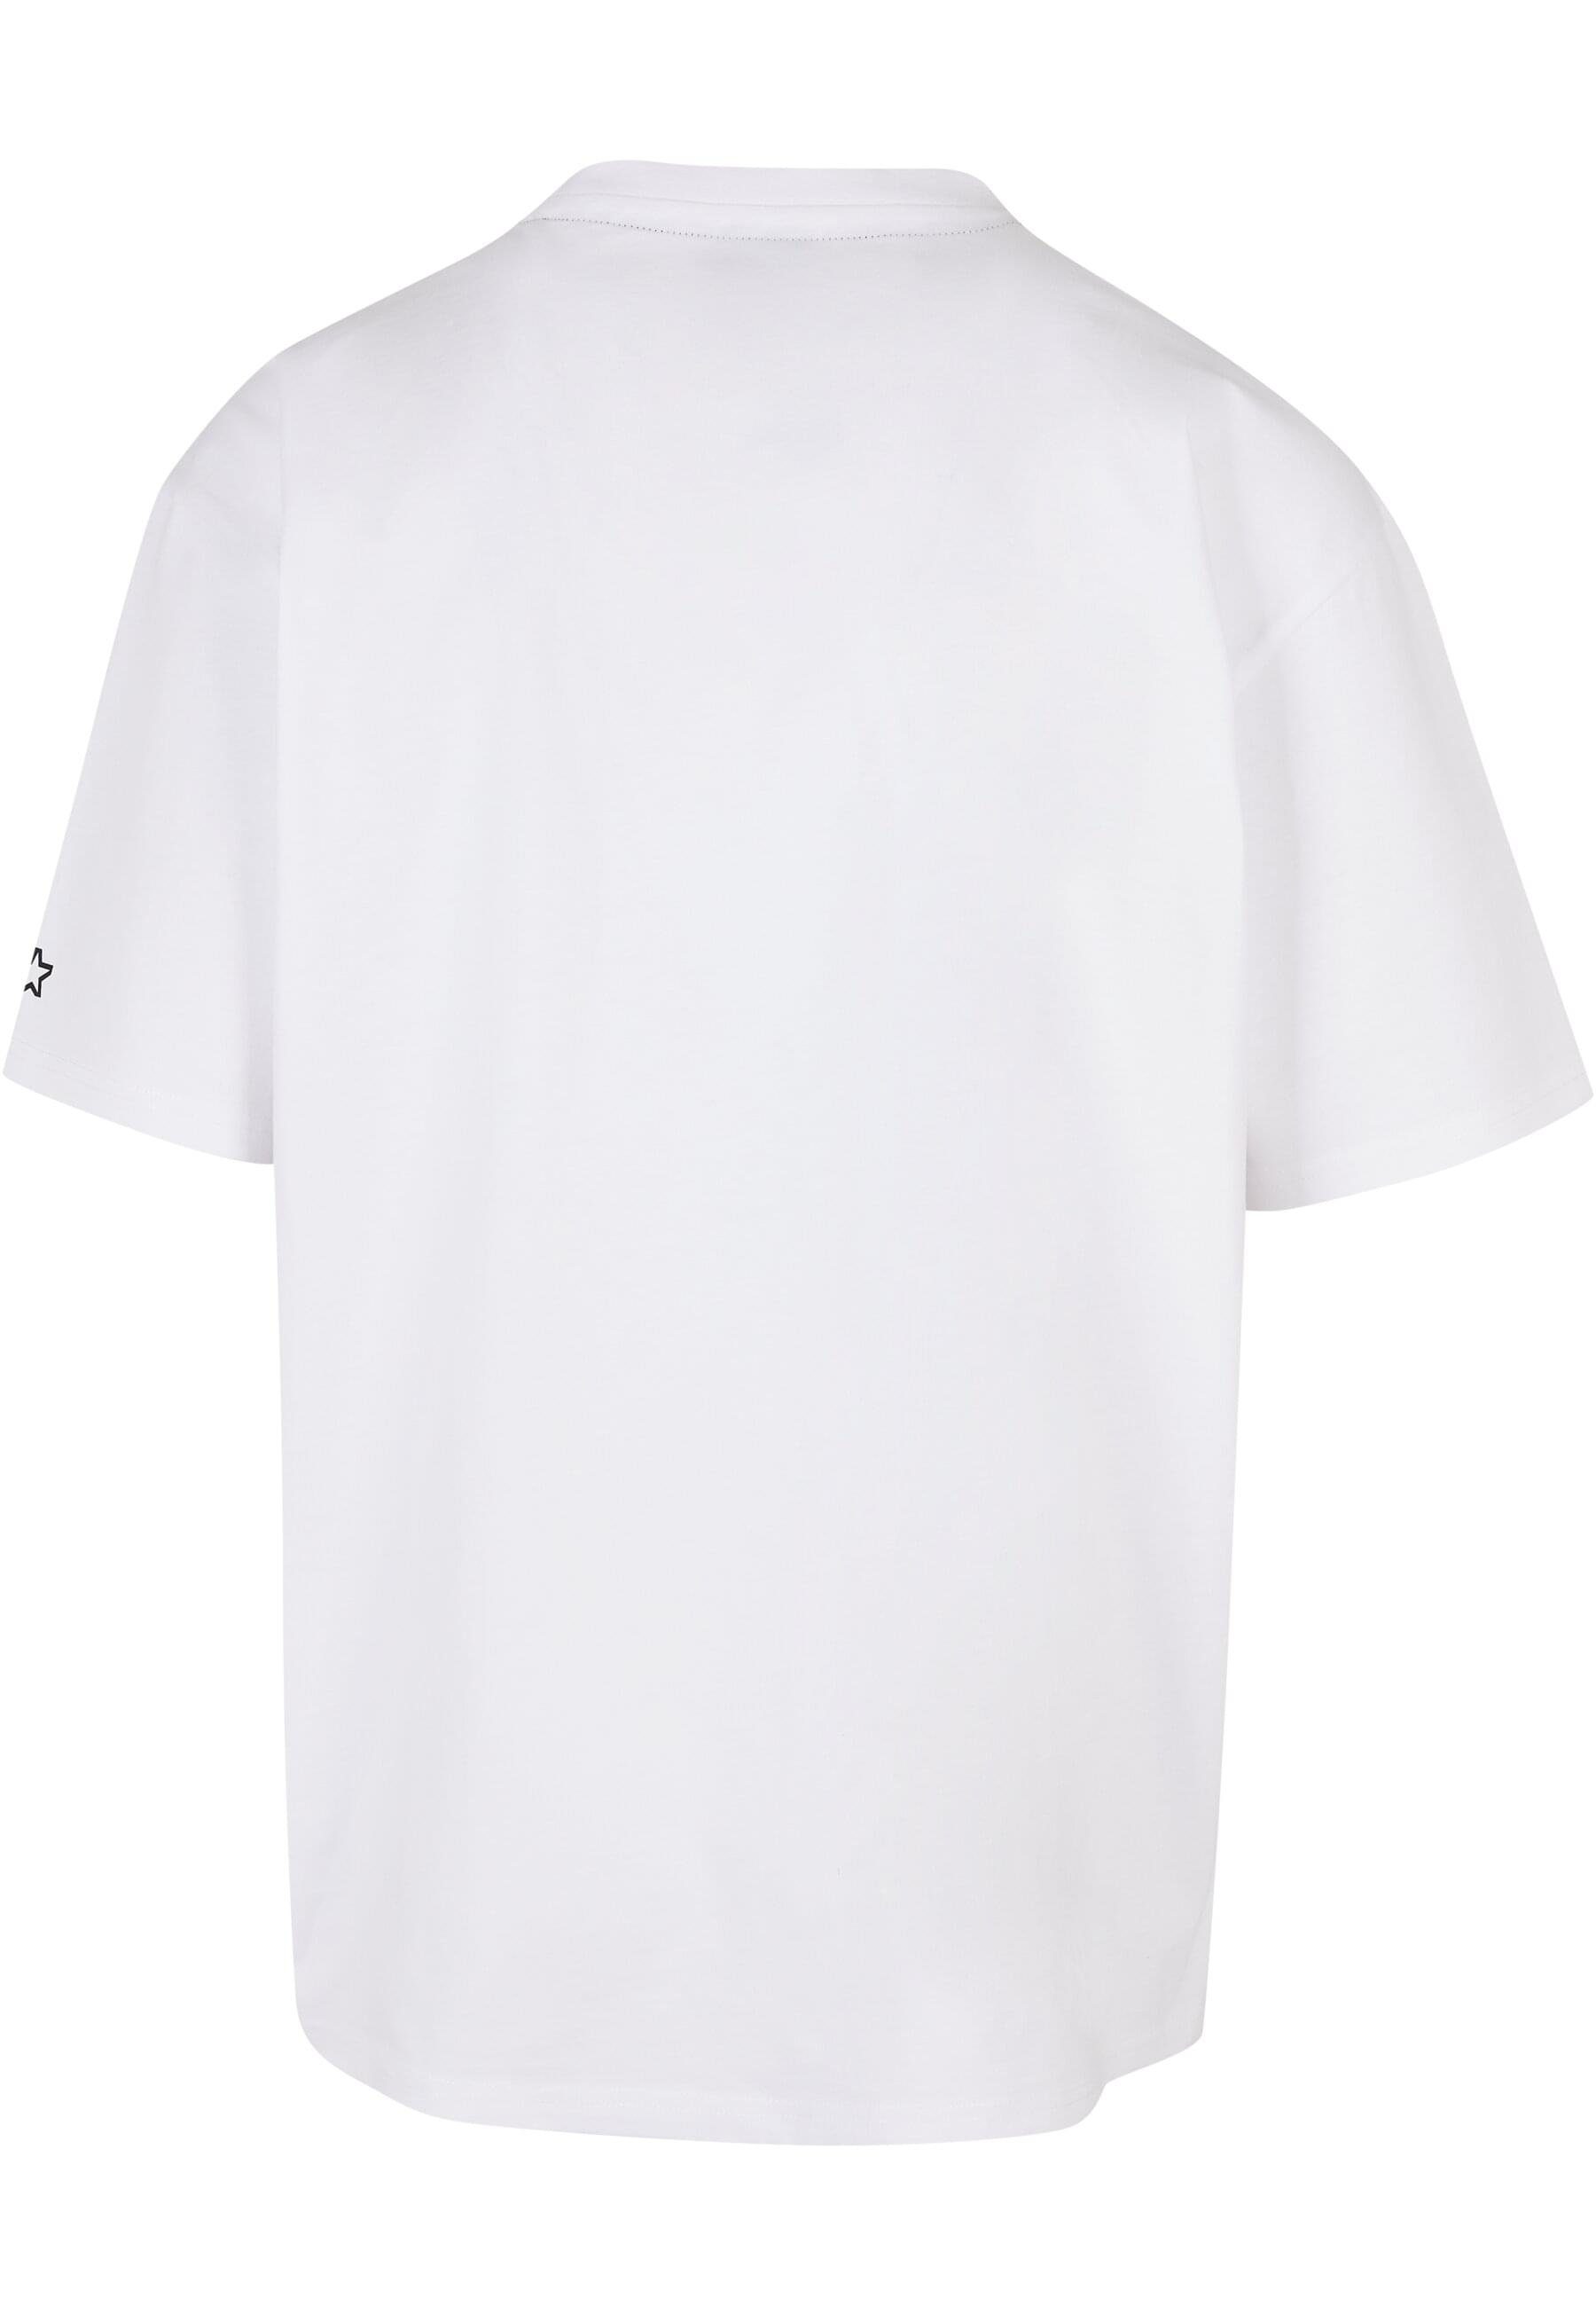 StarterAirball Herren Black Starter Label T-Shirt Tee (1-tlg)